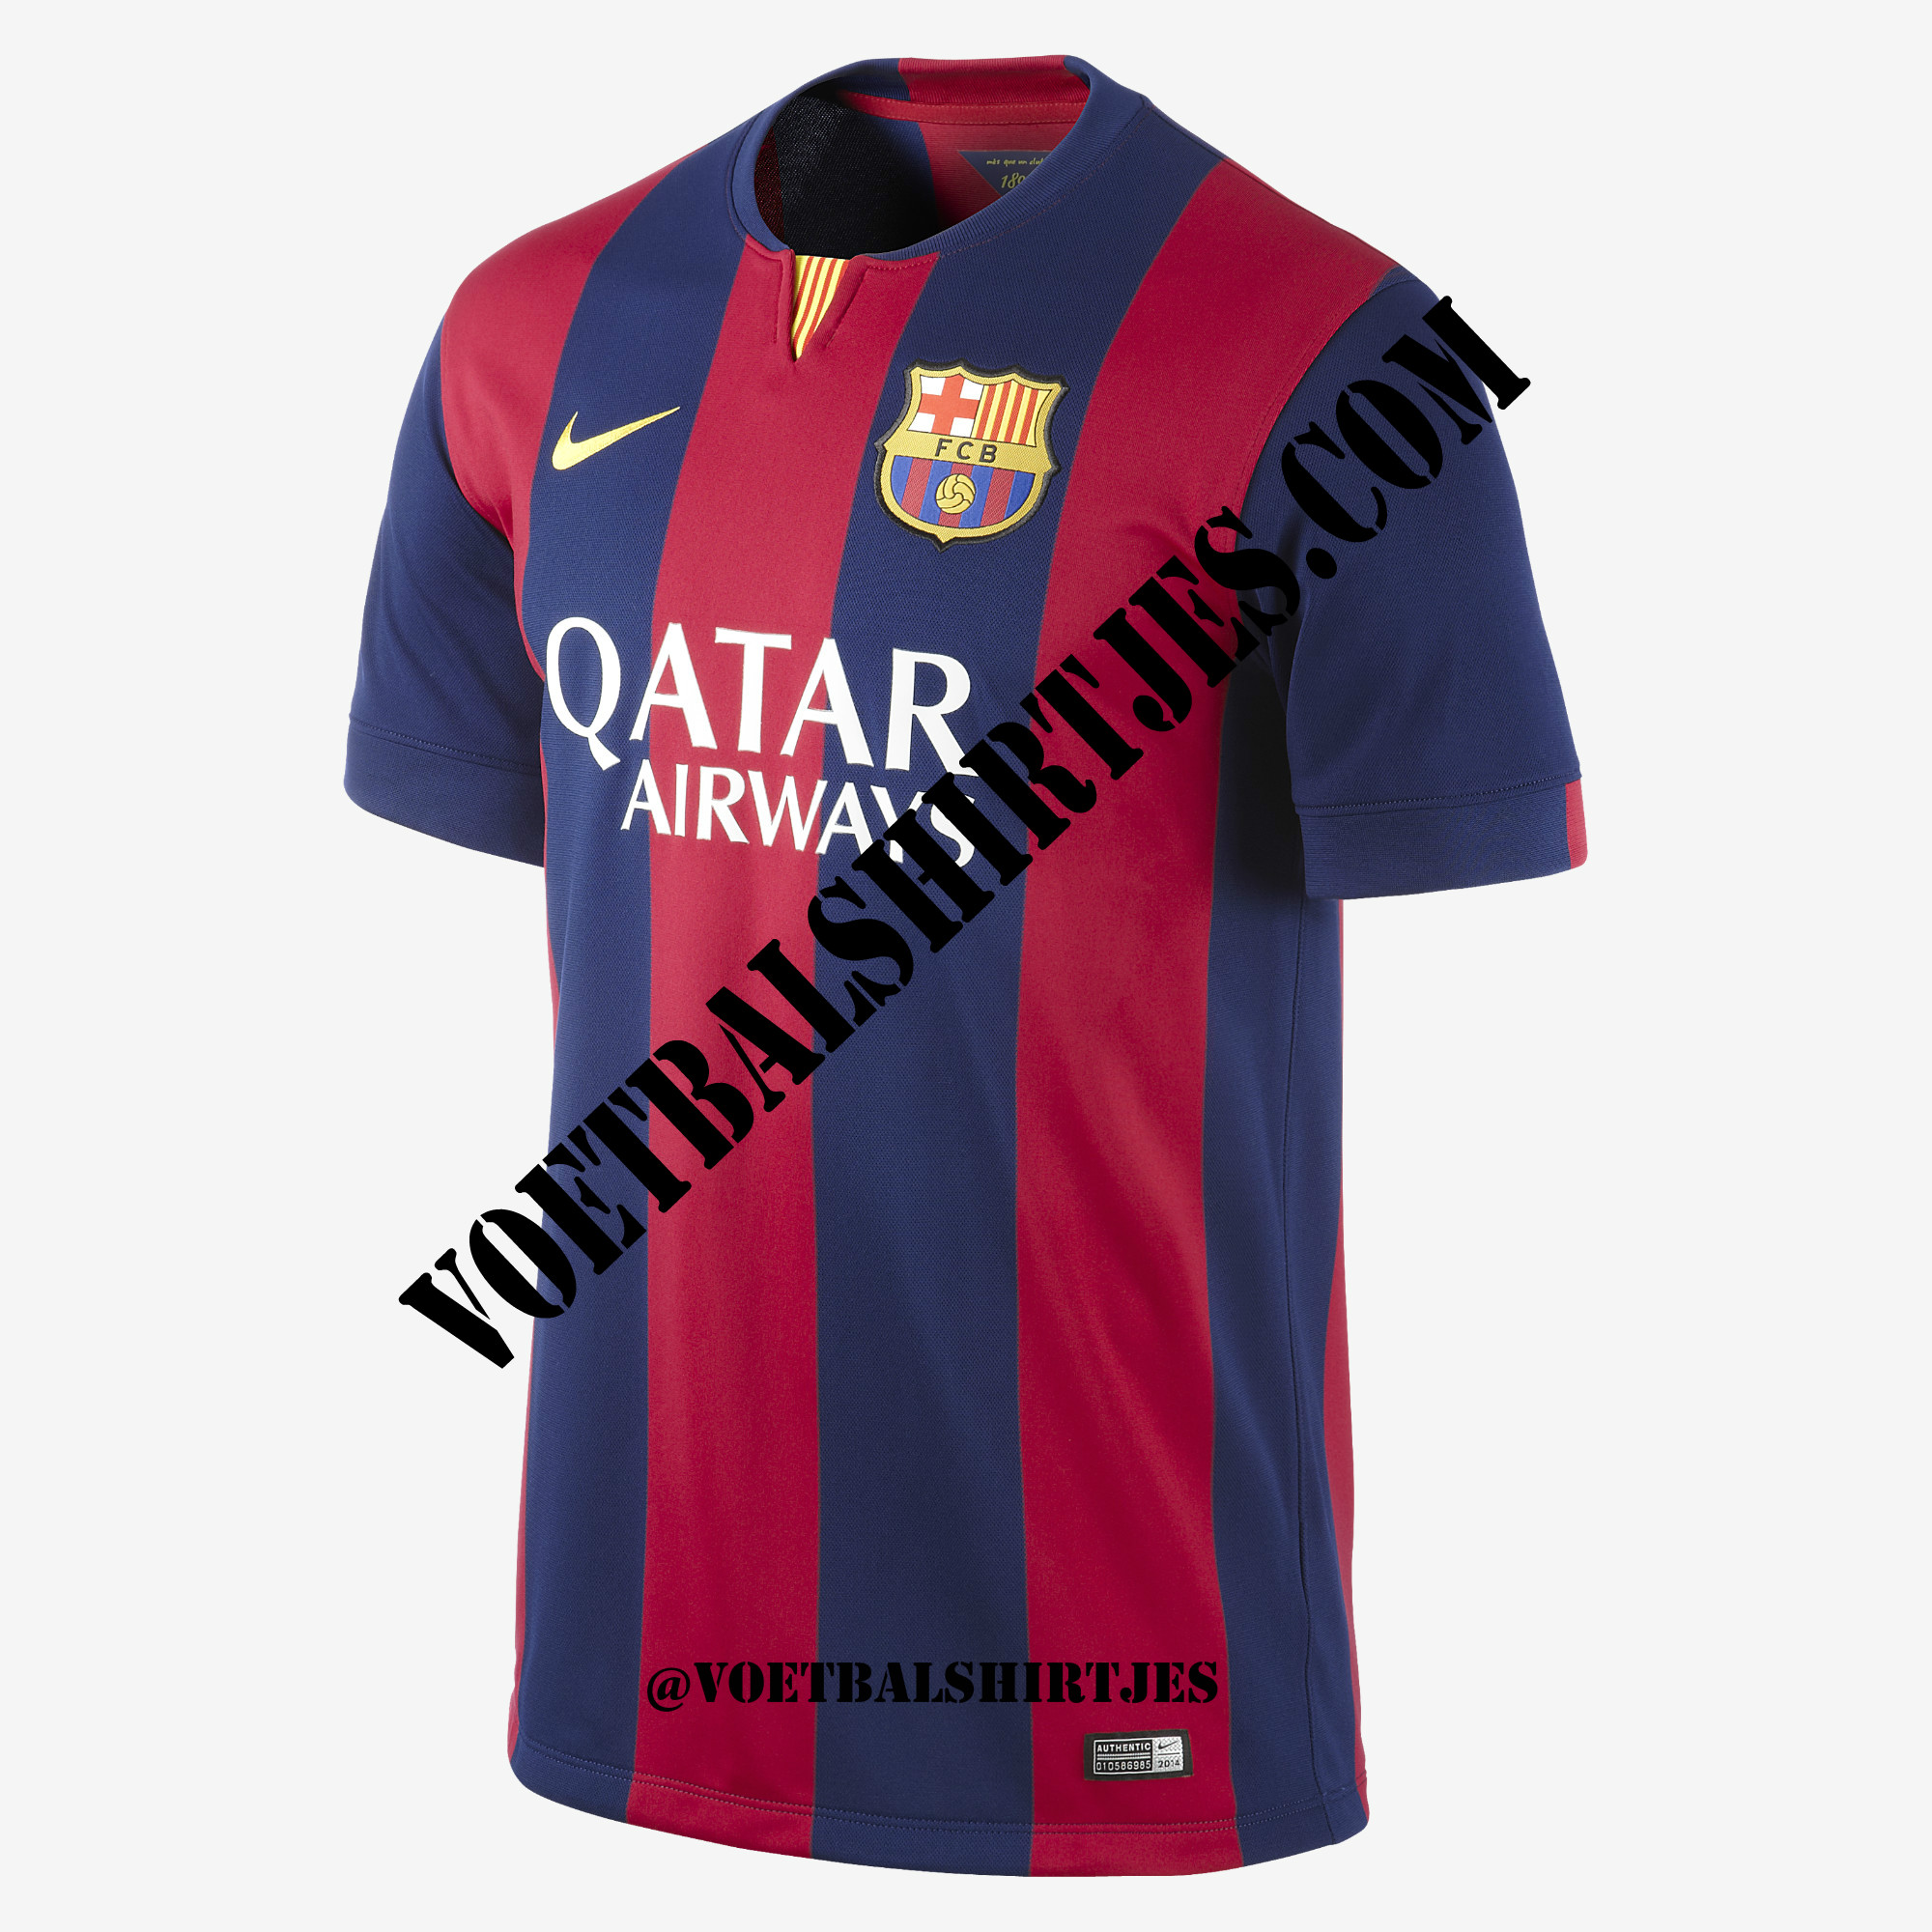 Slaapzaal dempen aangenaam FC Barcelona thuisshirt 2014/2015 - Voetbalshirtjes.com